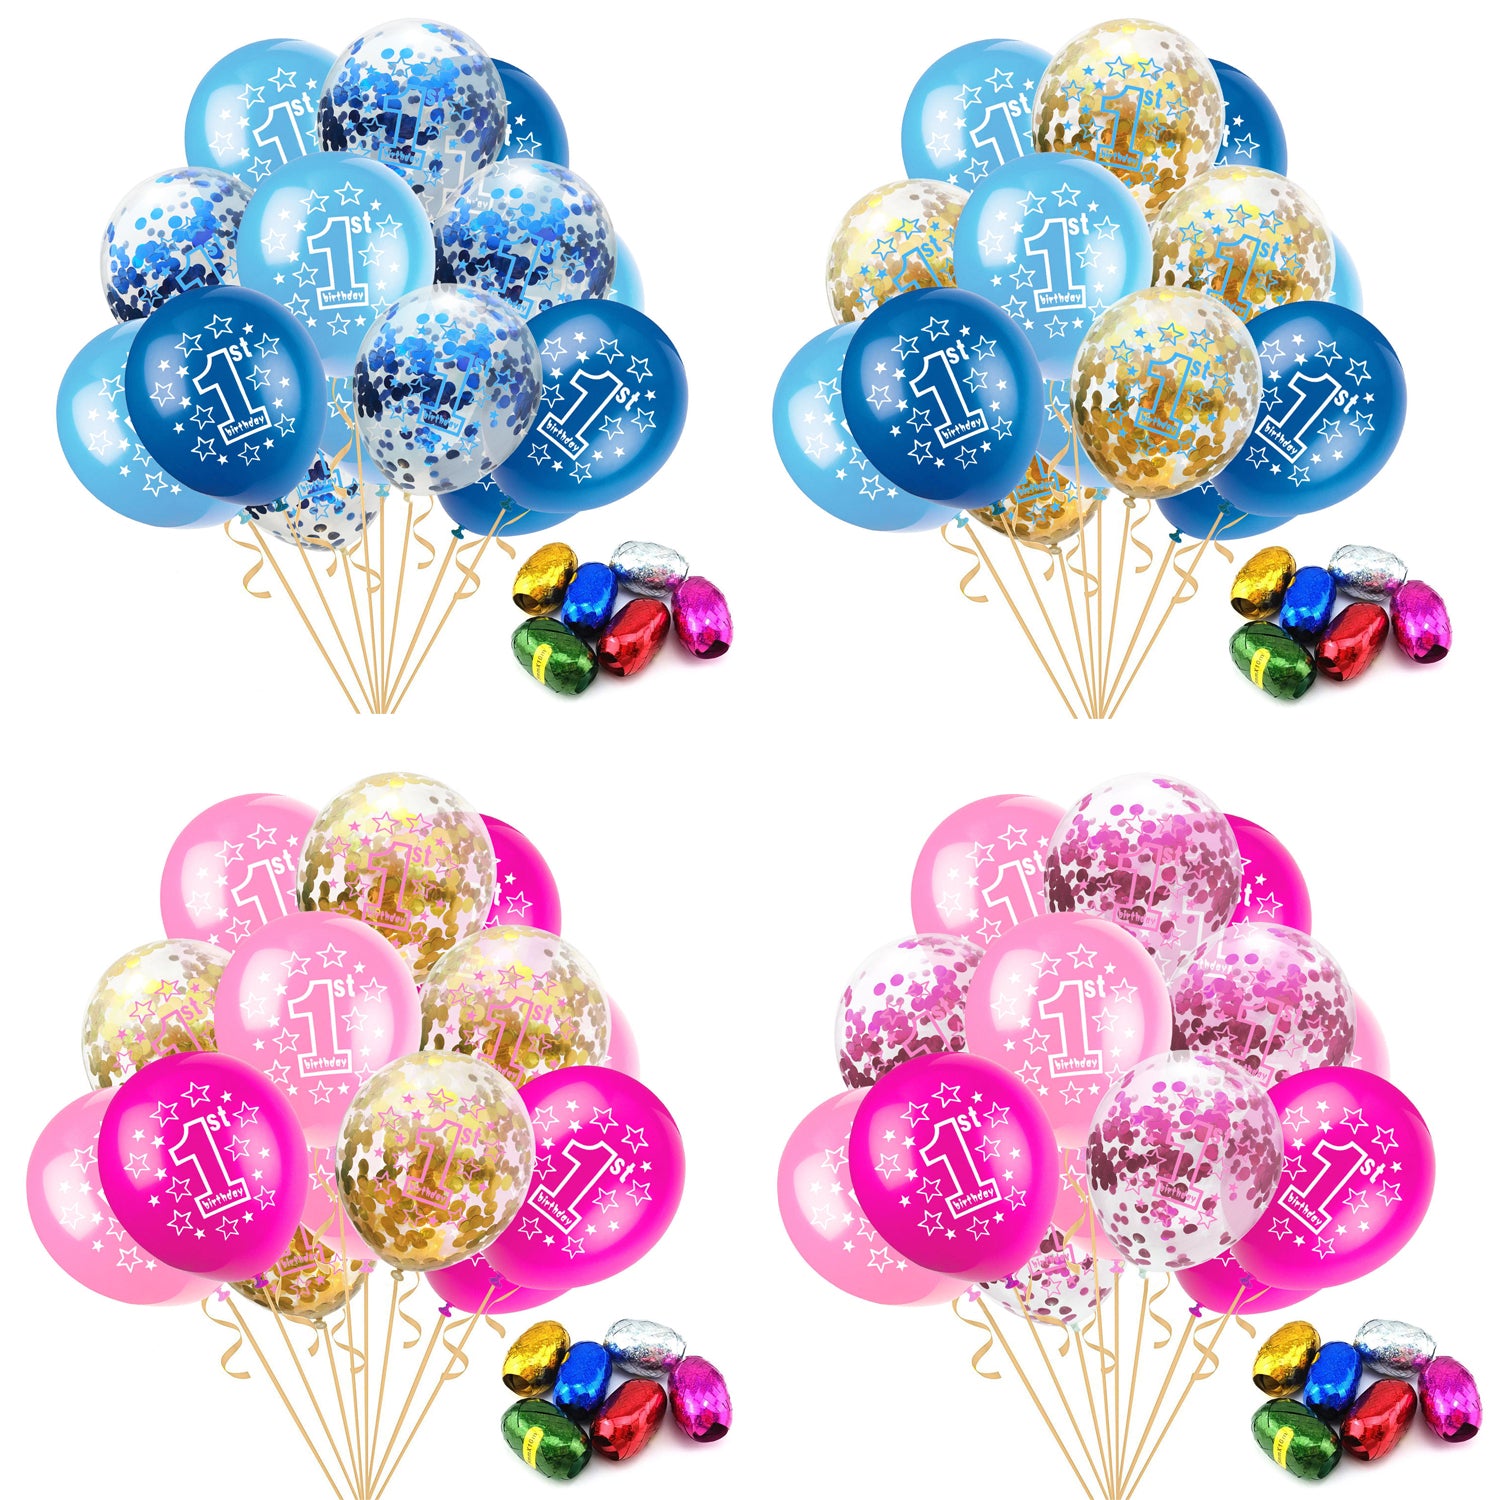 Set de baloane pentru petrecere, cu confetti, colorate, pentru zi de na?tere